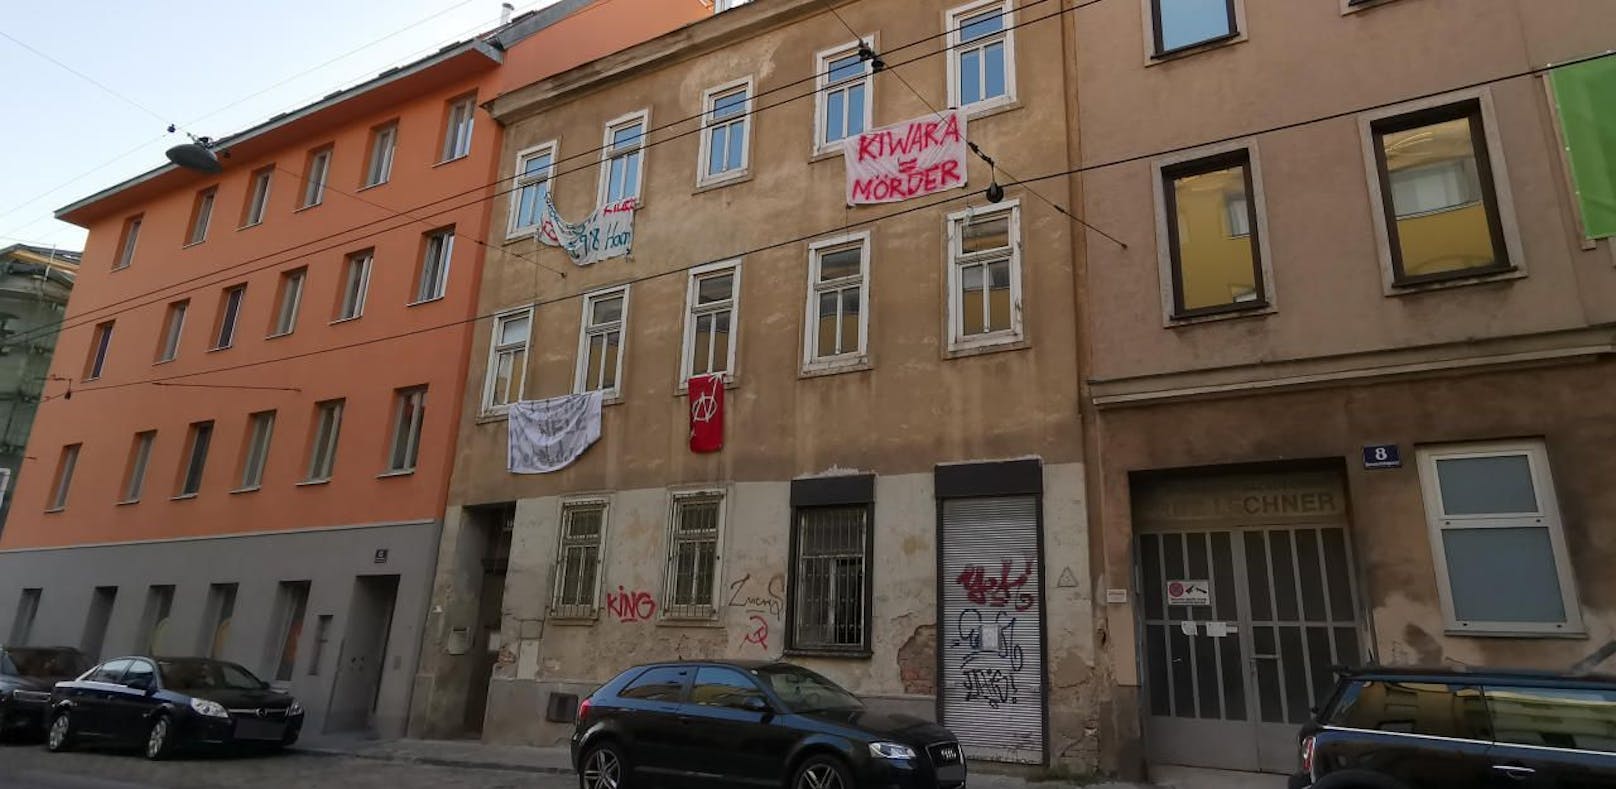 Anarchos besetzen nächstes Haus in Wien